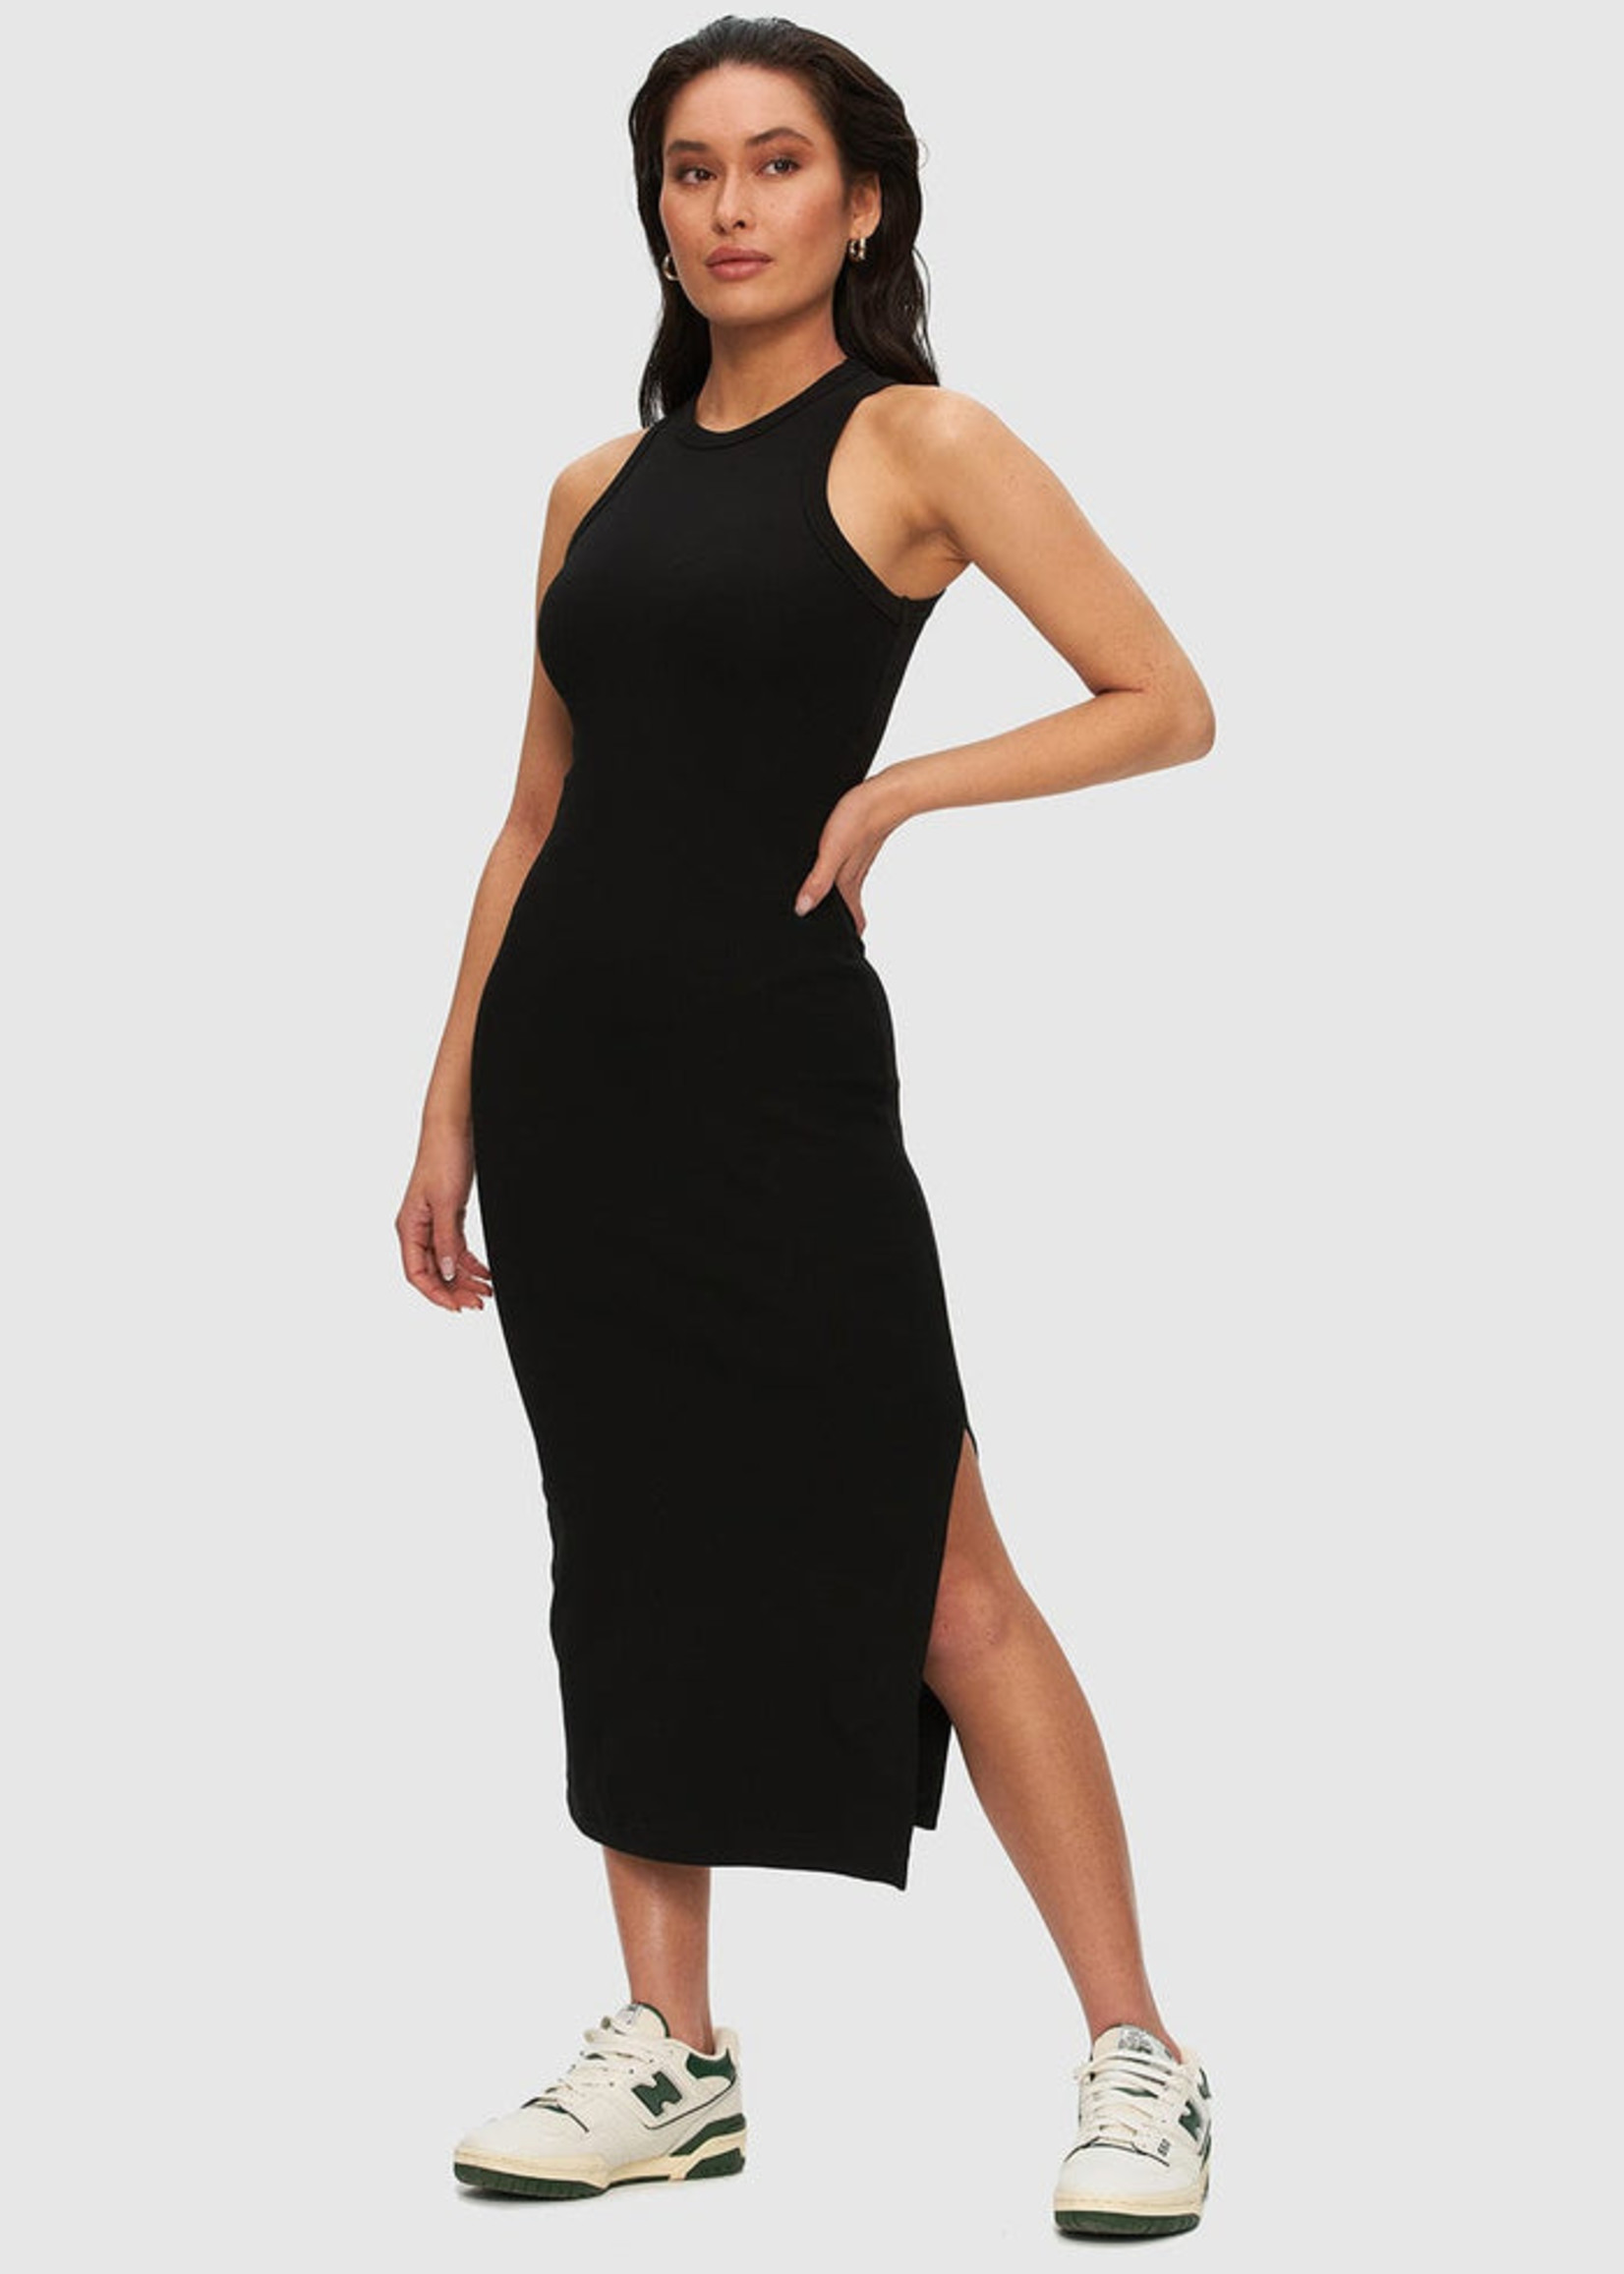 https://cdn.shoplightspeed.com/shops/663423/files/53920889/1652x2313x1/kuwalla-ku-midi-tank-dress-black.jpg